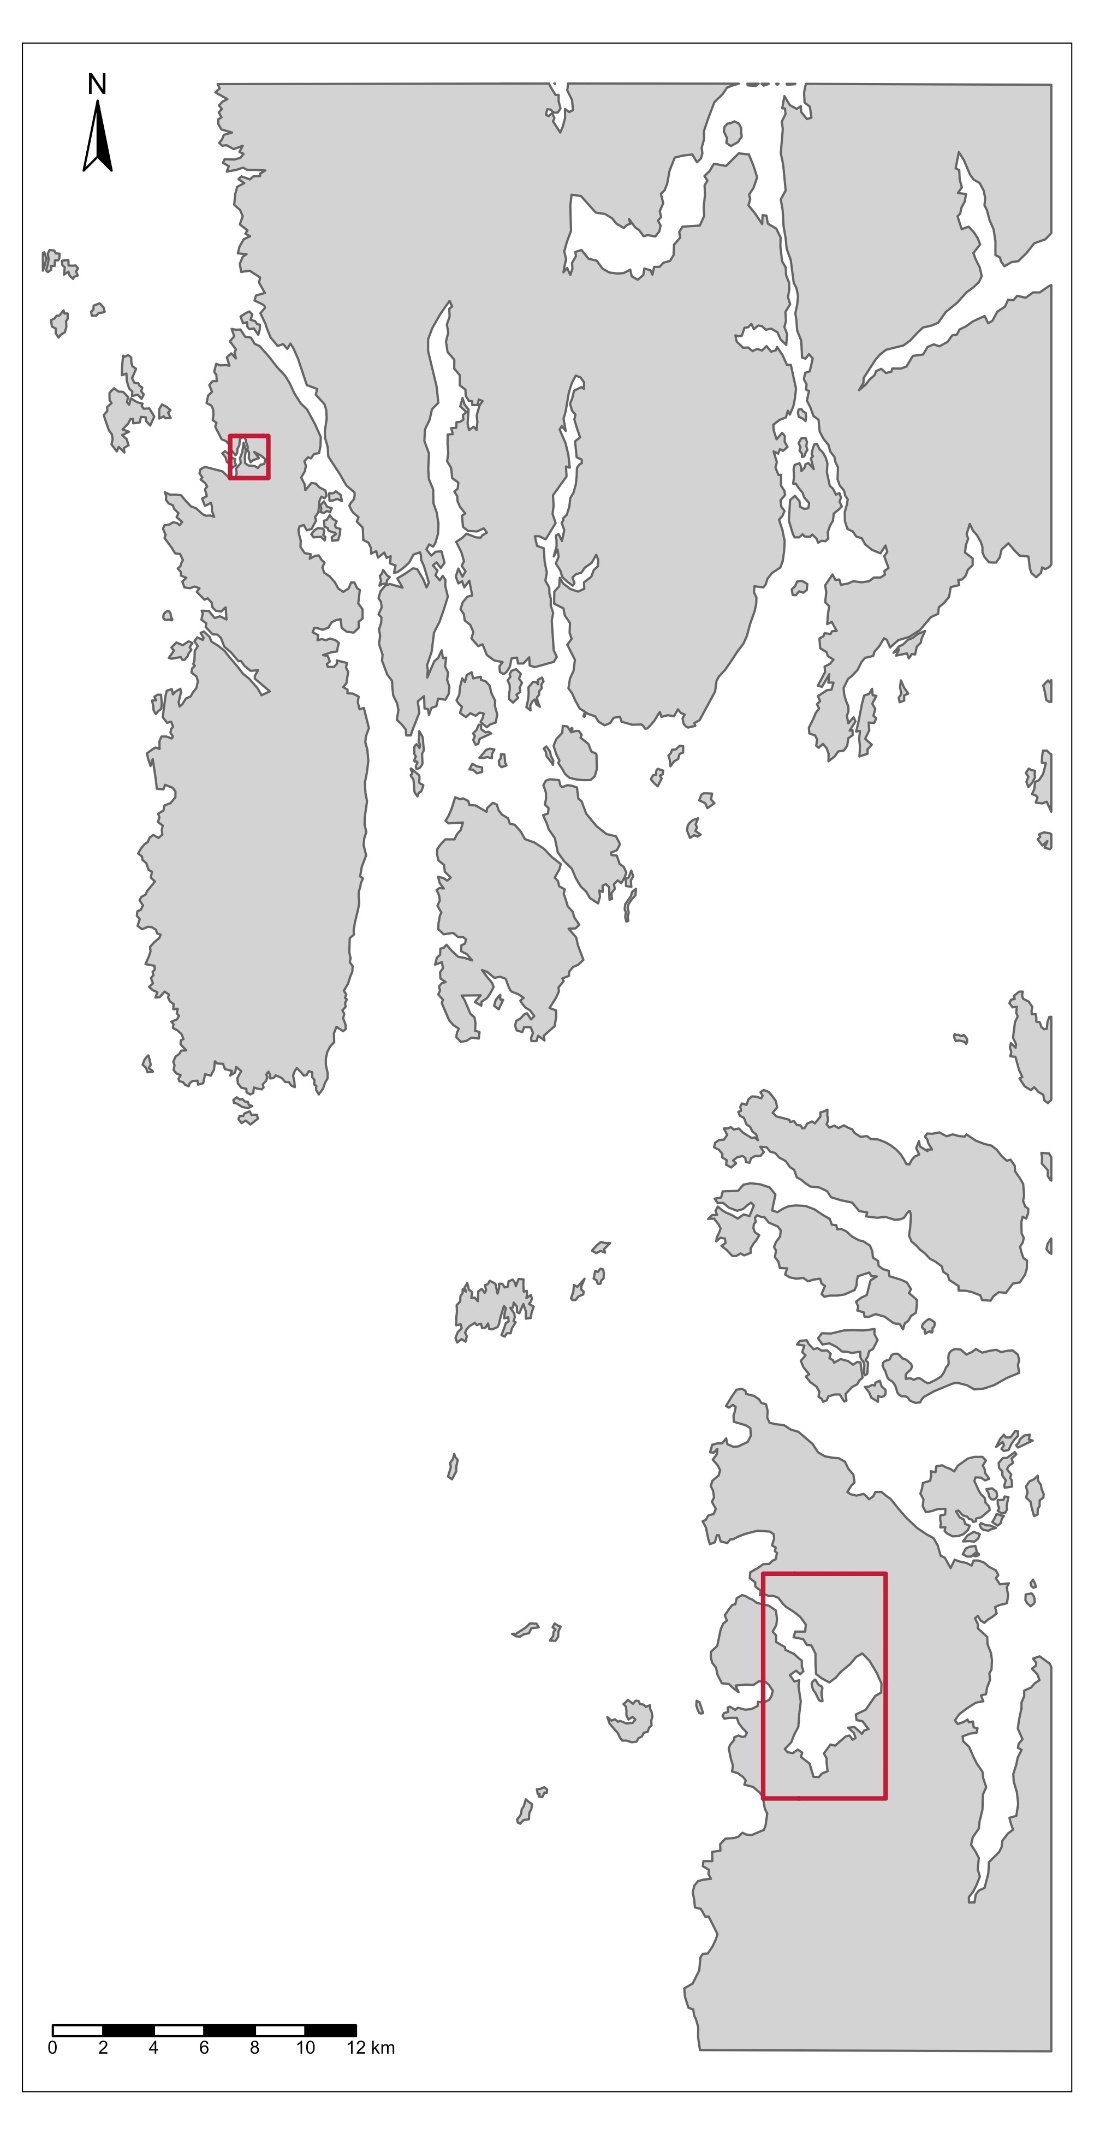 Kart over områder hvor østersbestandene ble beskrevet i 2021 og 2023